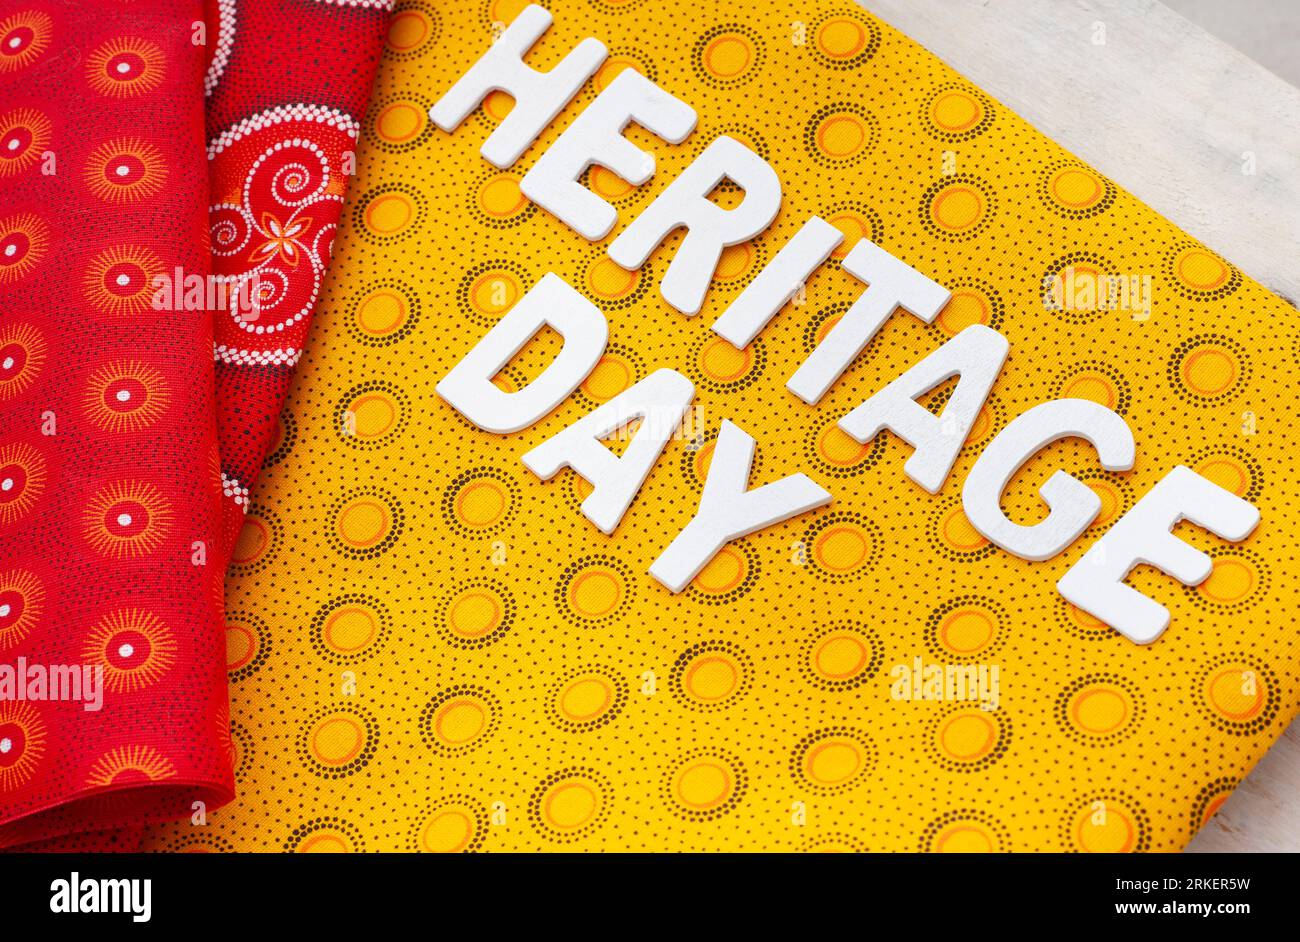 Heritage Day Sudafrica. Heritage Day scritto in lettere bianche con iconico tessuto stampato sudafricano Foto Stock